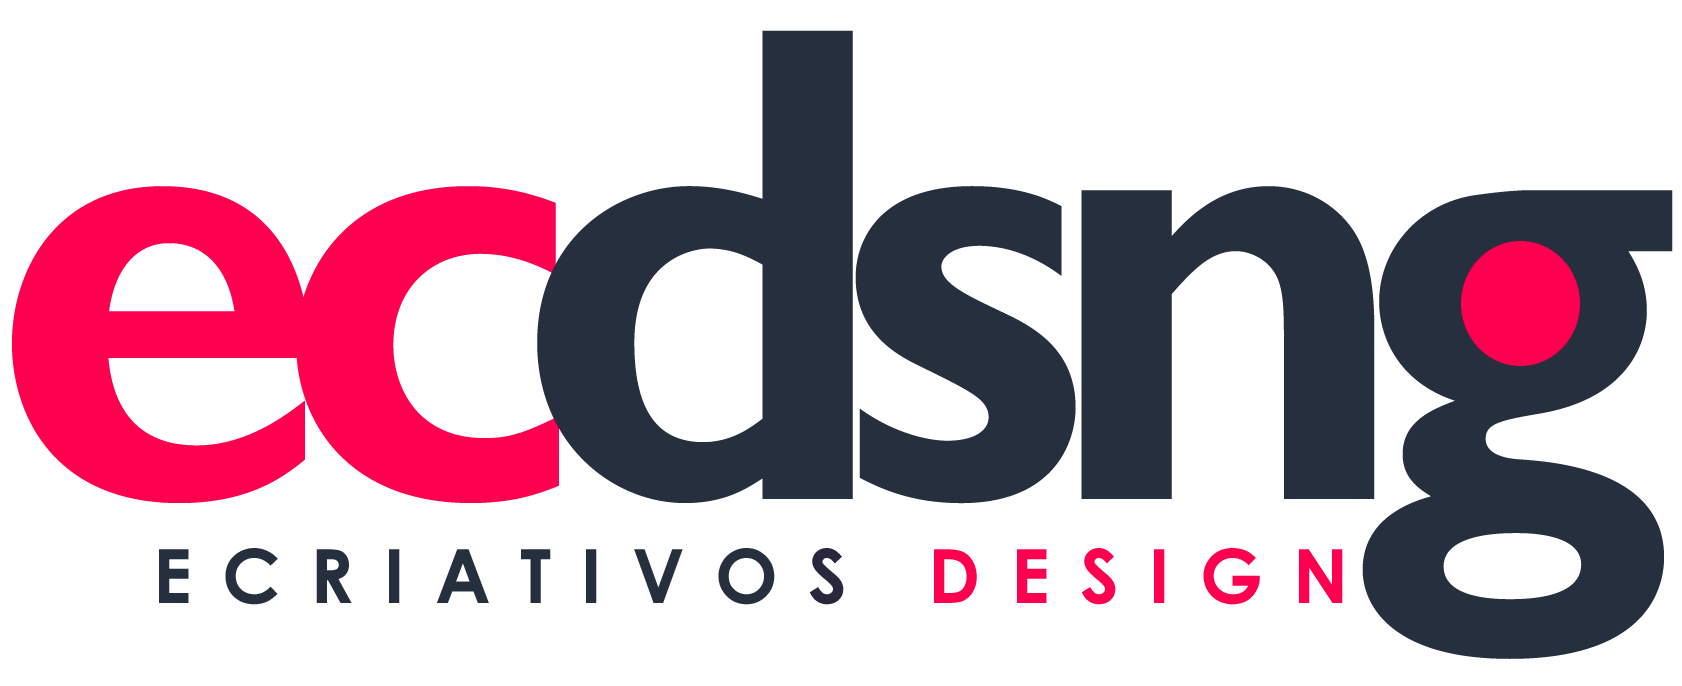 eCriativos: Inovação em Design, Publicidade, Propaganda e Soluções Digitais em São Luís, Maranhão - Potencialize Sua Presença Online!